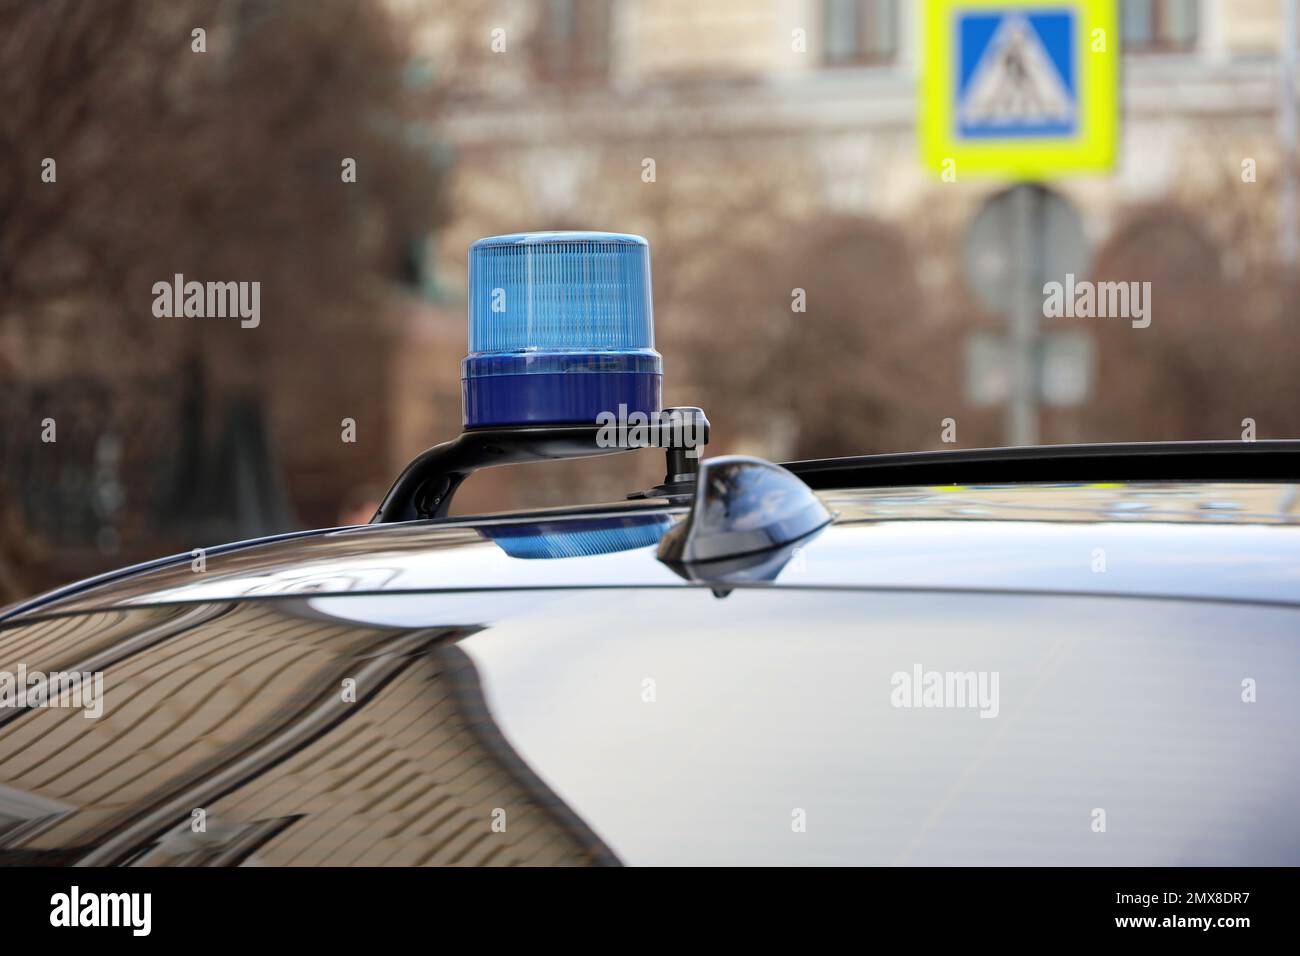 Le voyant clignote en bleu sur une voiture gouvernementale dans une rue de la ville. Concept des pouvoirs, des avantages et des privilèges des fonctionnaires Banque D'Images